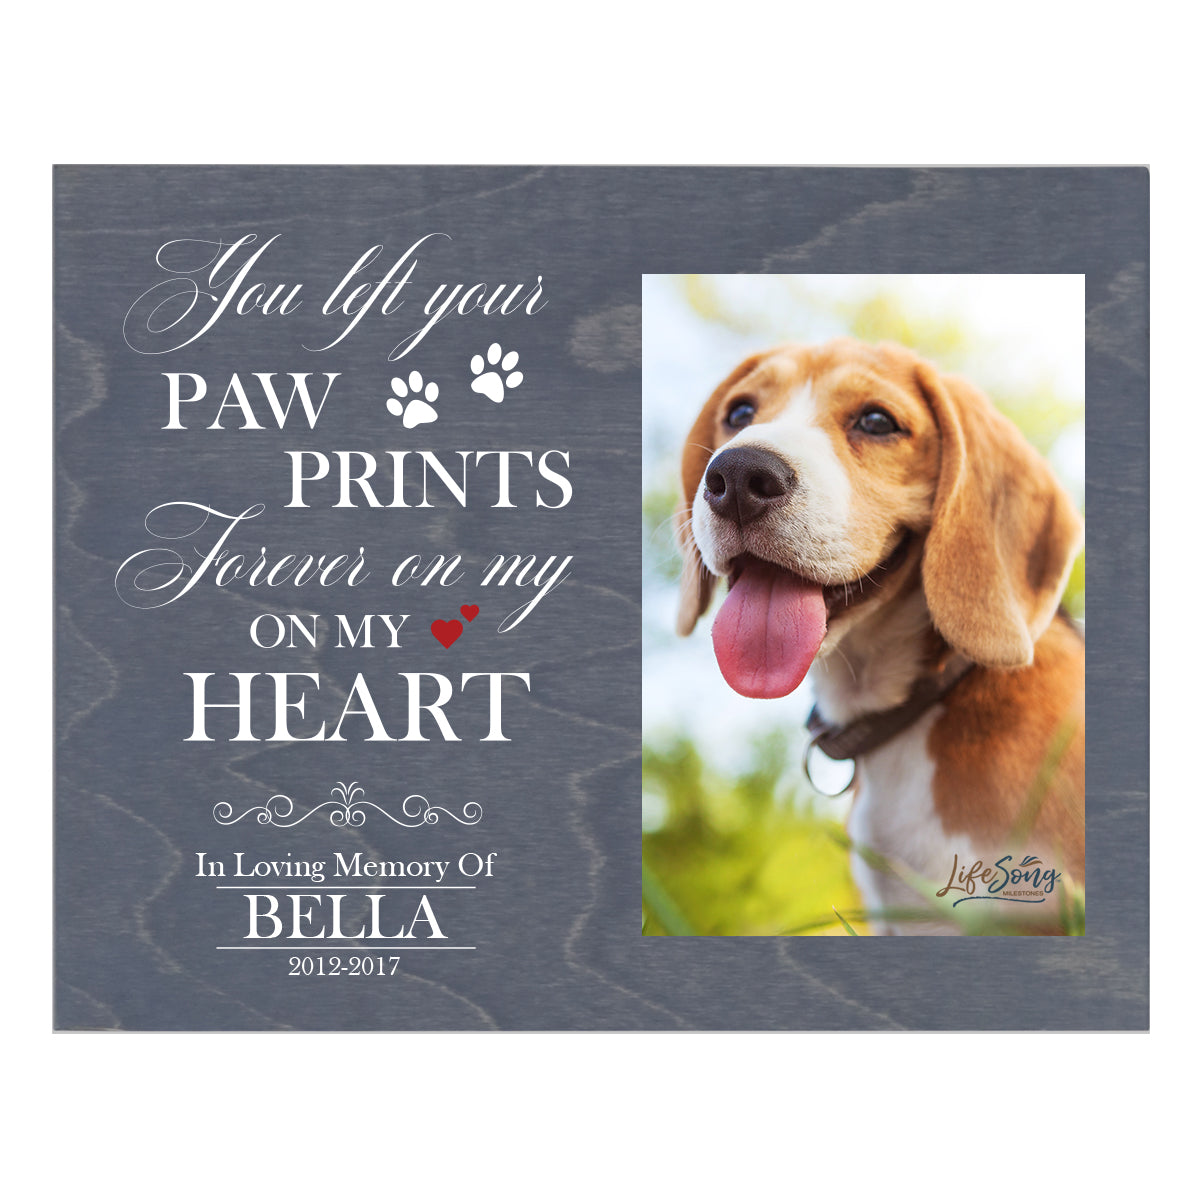 Pet Memorial Photo Wall Plaque Décor - You Left Your Paw Prints